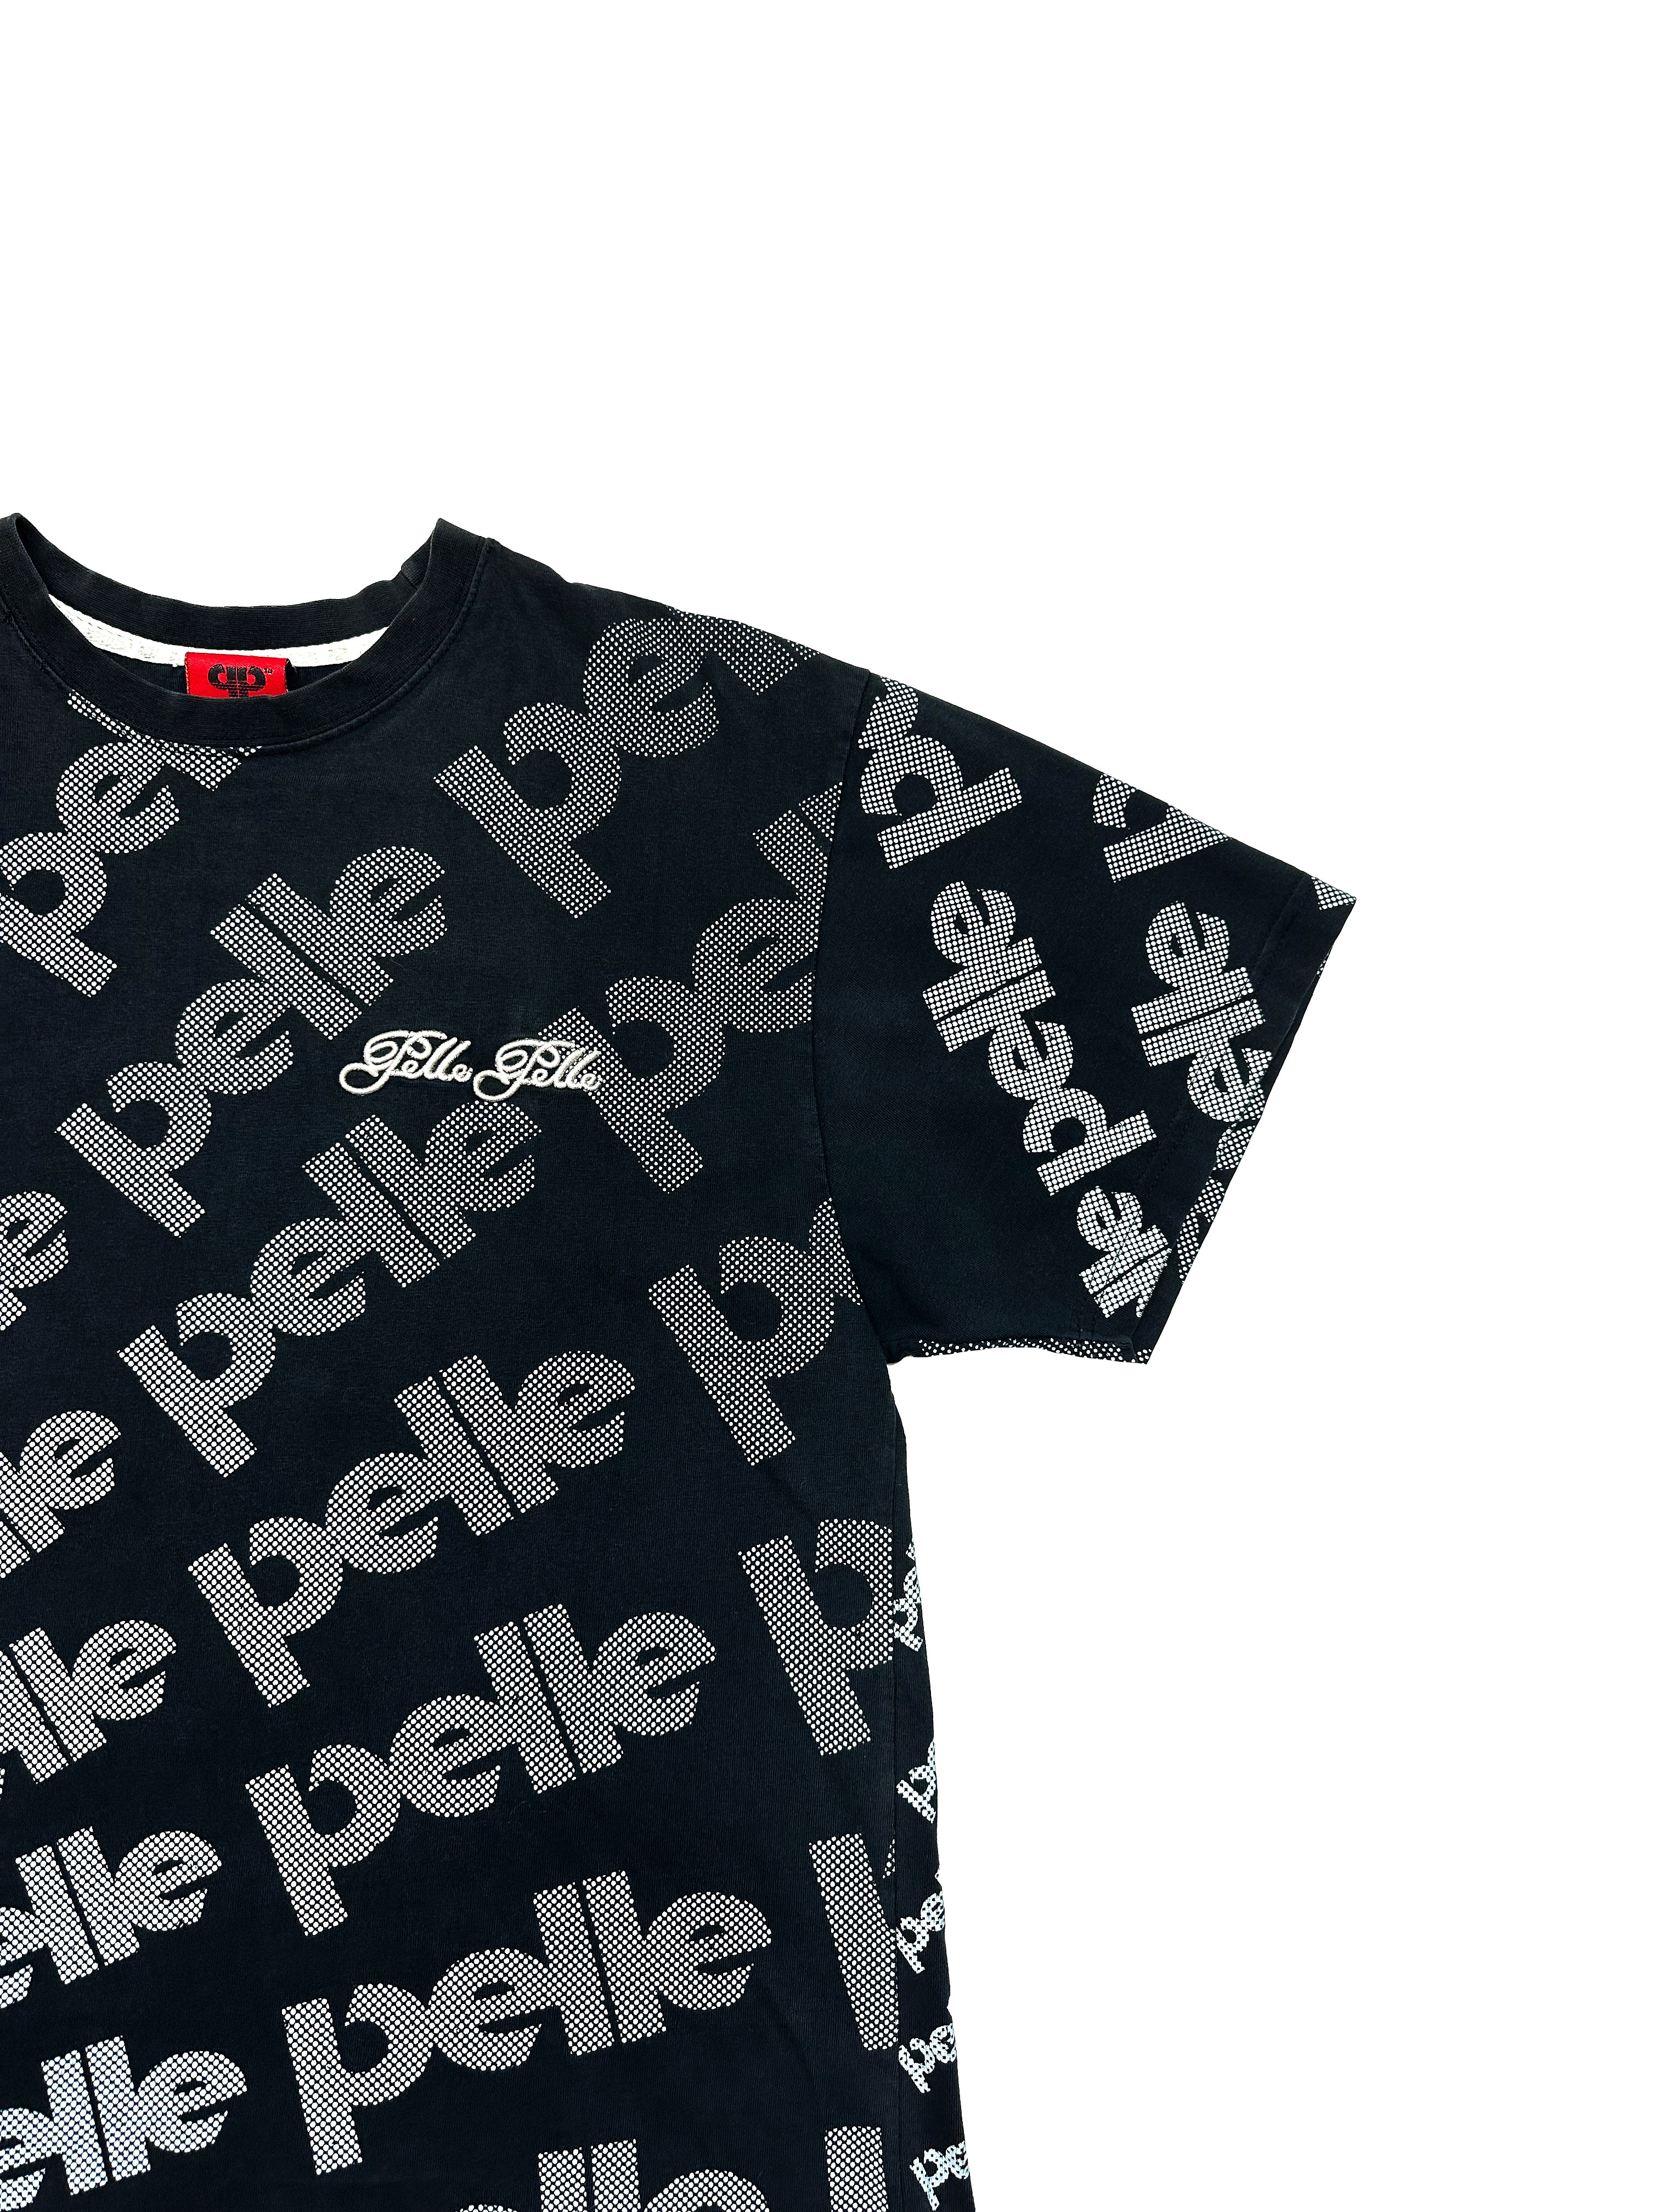 Pelle Pelle Spell Out T-shirt 00's